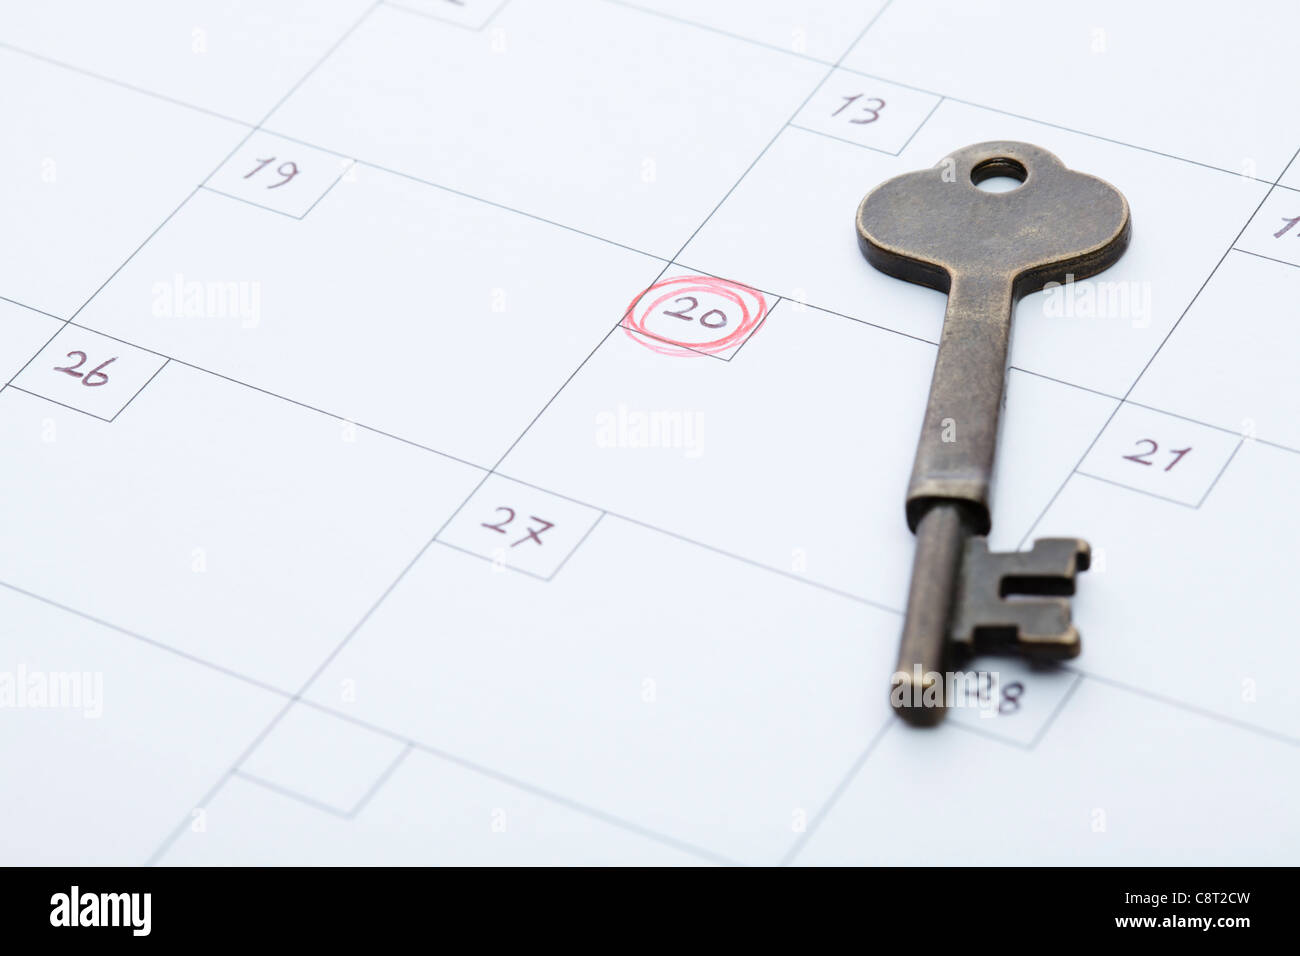 Close-up of key sur calendrier avec marquage sur 20 du mois Banque D'Images